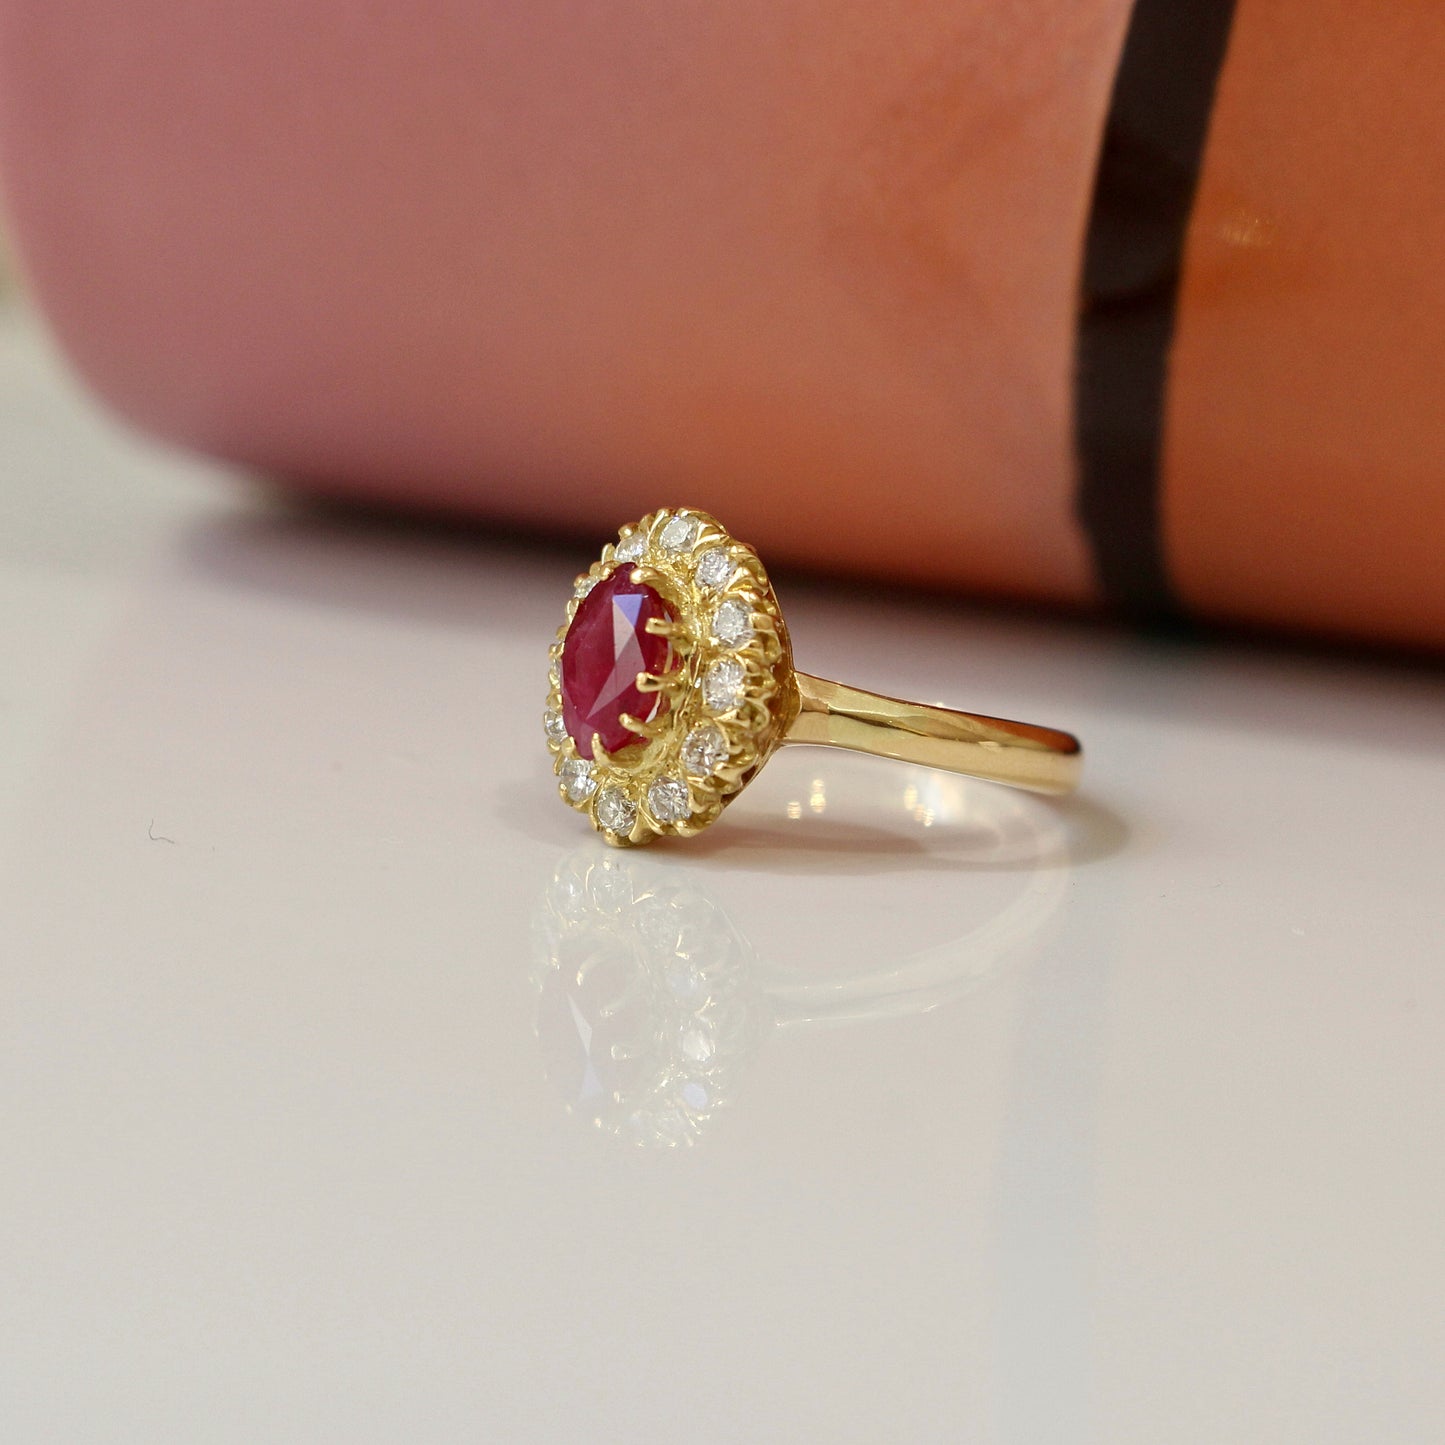 bague marguerite ornée d'un rubis en son centre entièrement entouré de diamants, monture en or jaune 18k